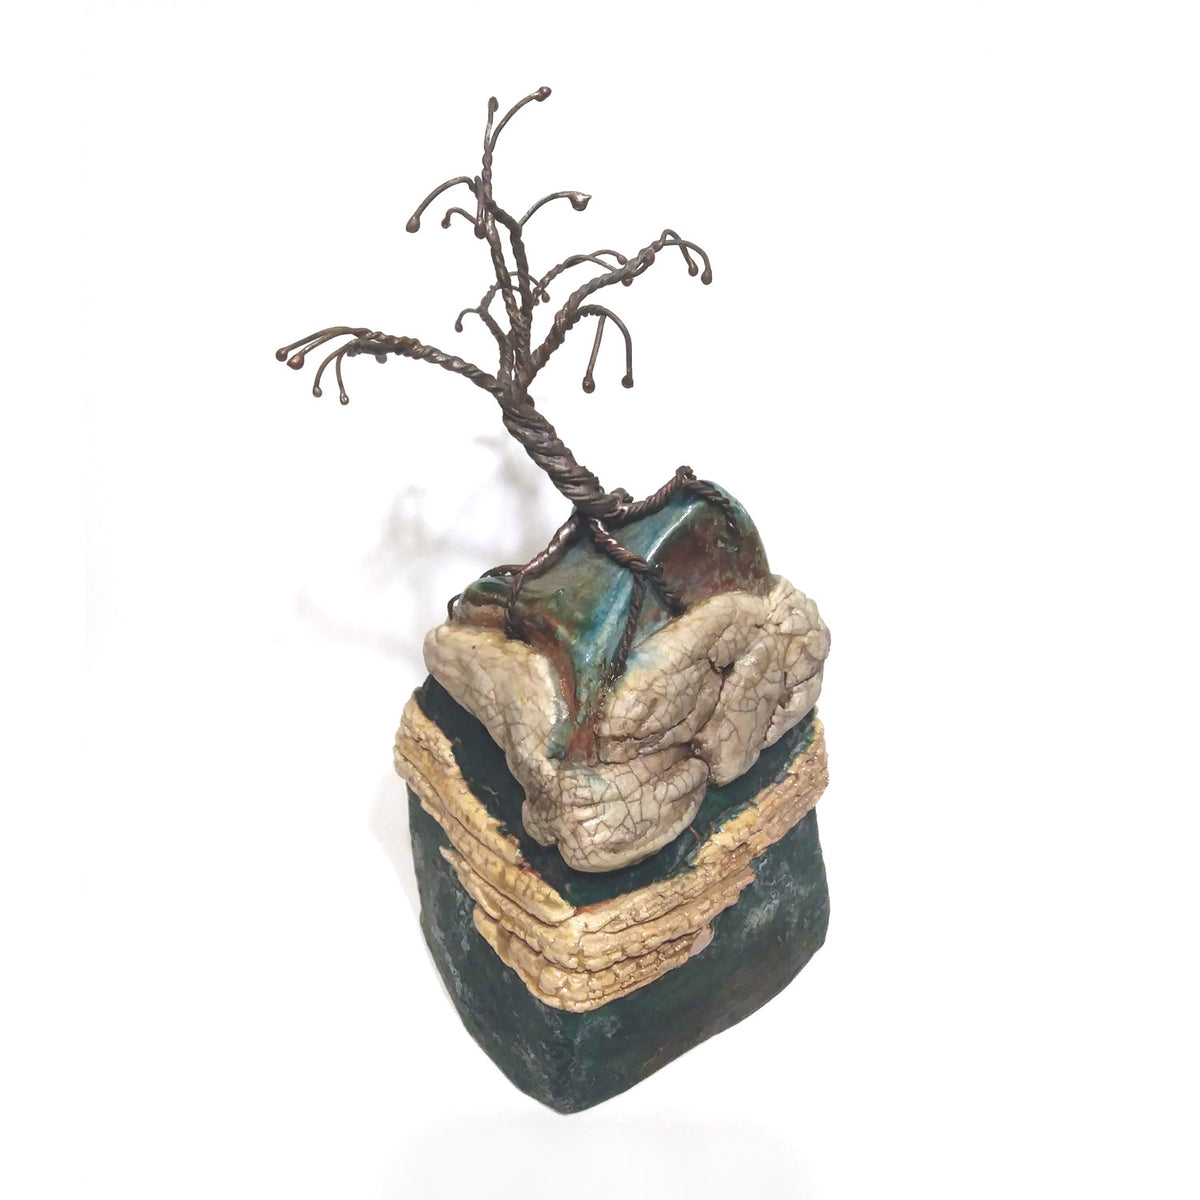 richard & susan surette - green glaze mountain jar with thick dark tree